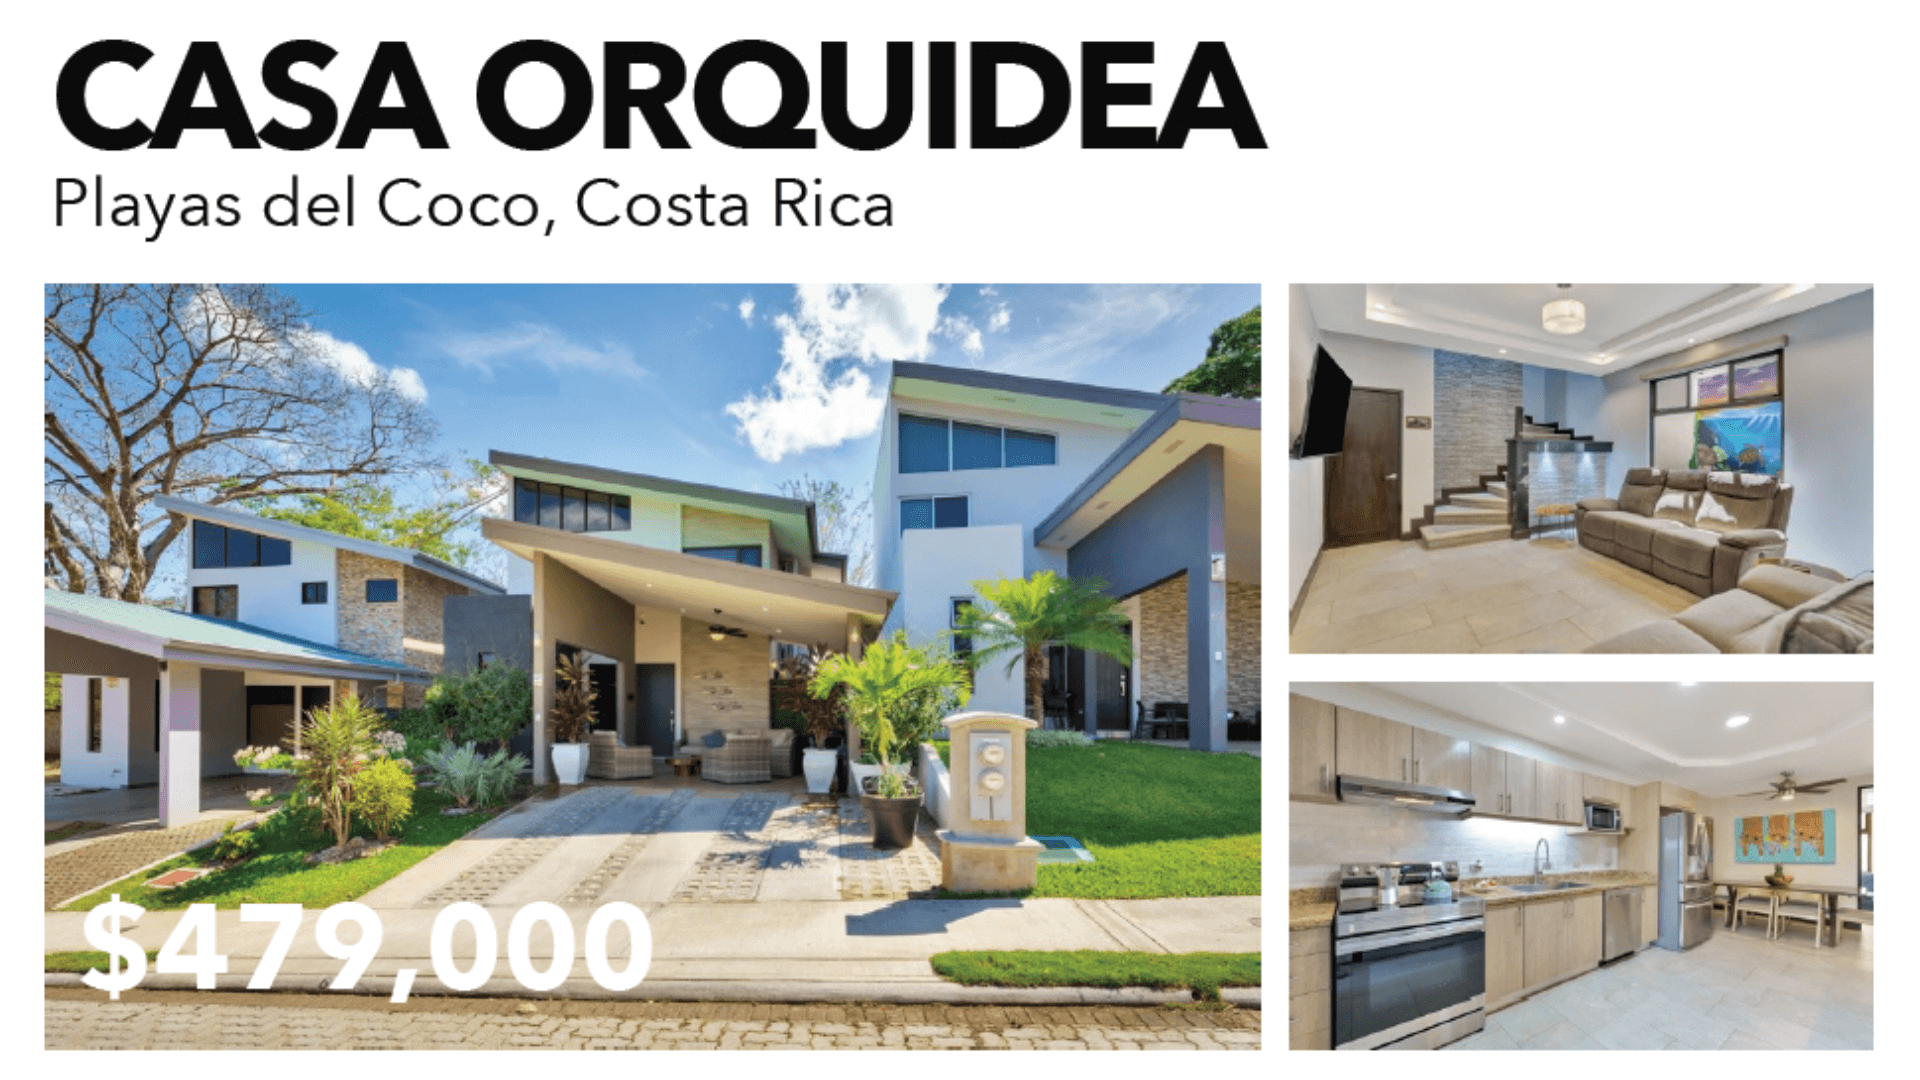 Casa Orquidea - 1920 x 1080 (1)